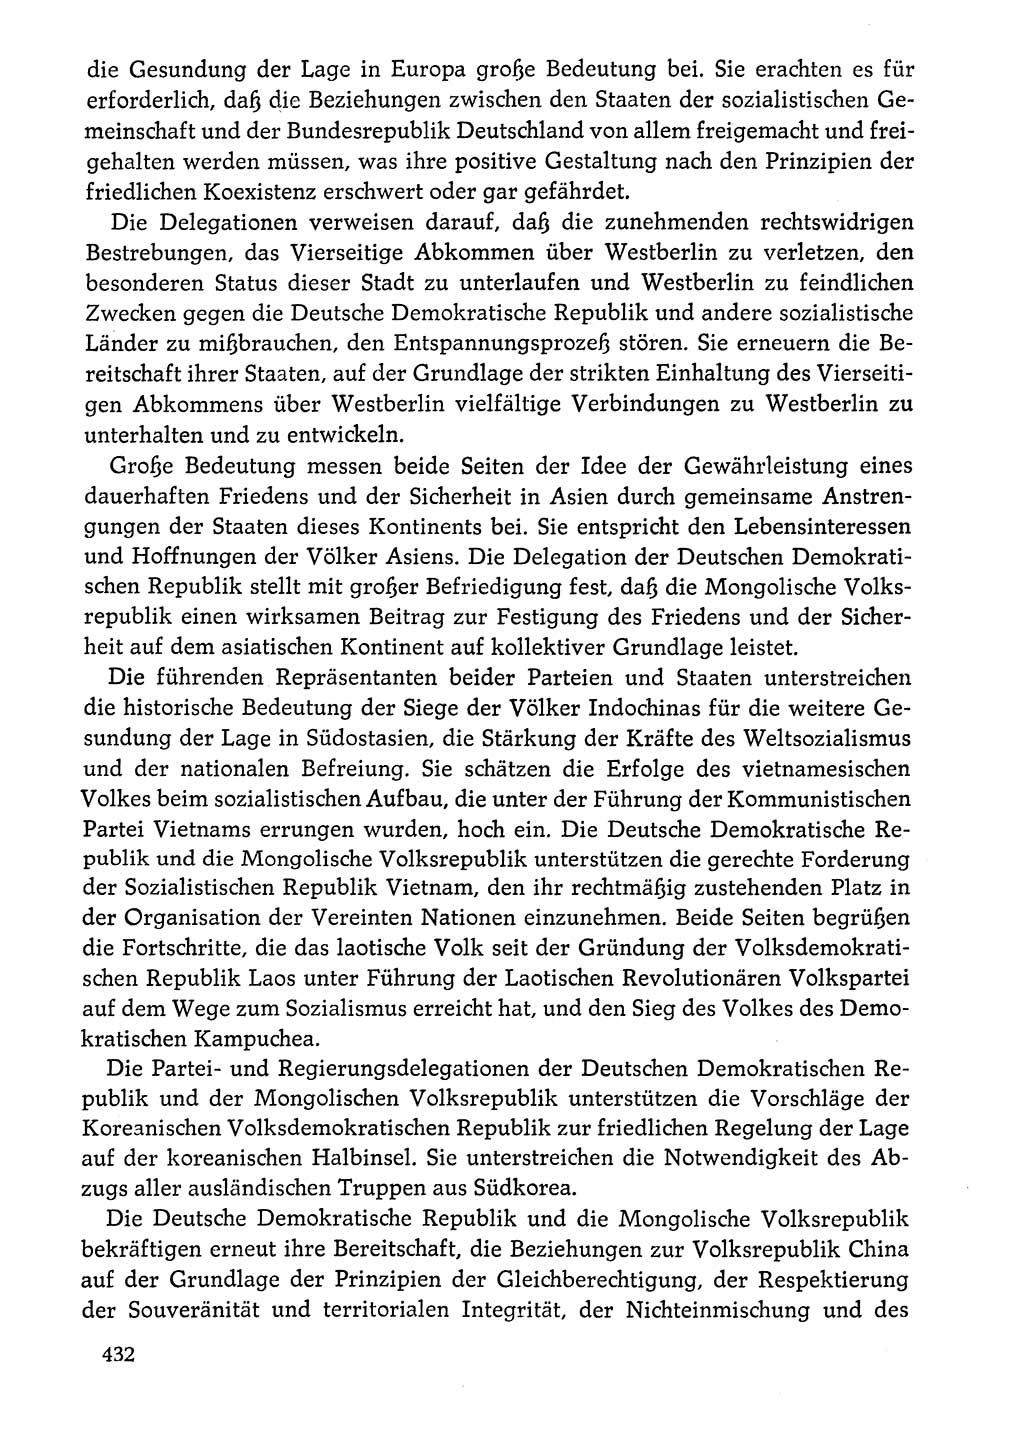 Dokumente der Sozialistischen Einheitspartei Deutschlands (SED) [Deutsche Demokratische Republik (DDR)] 1976-1977, Seite 432 (Dok. SED DDR 1976-1977, S. 432)